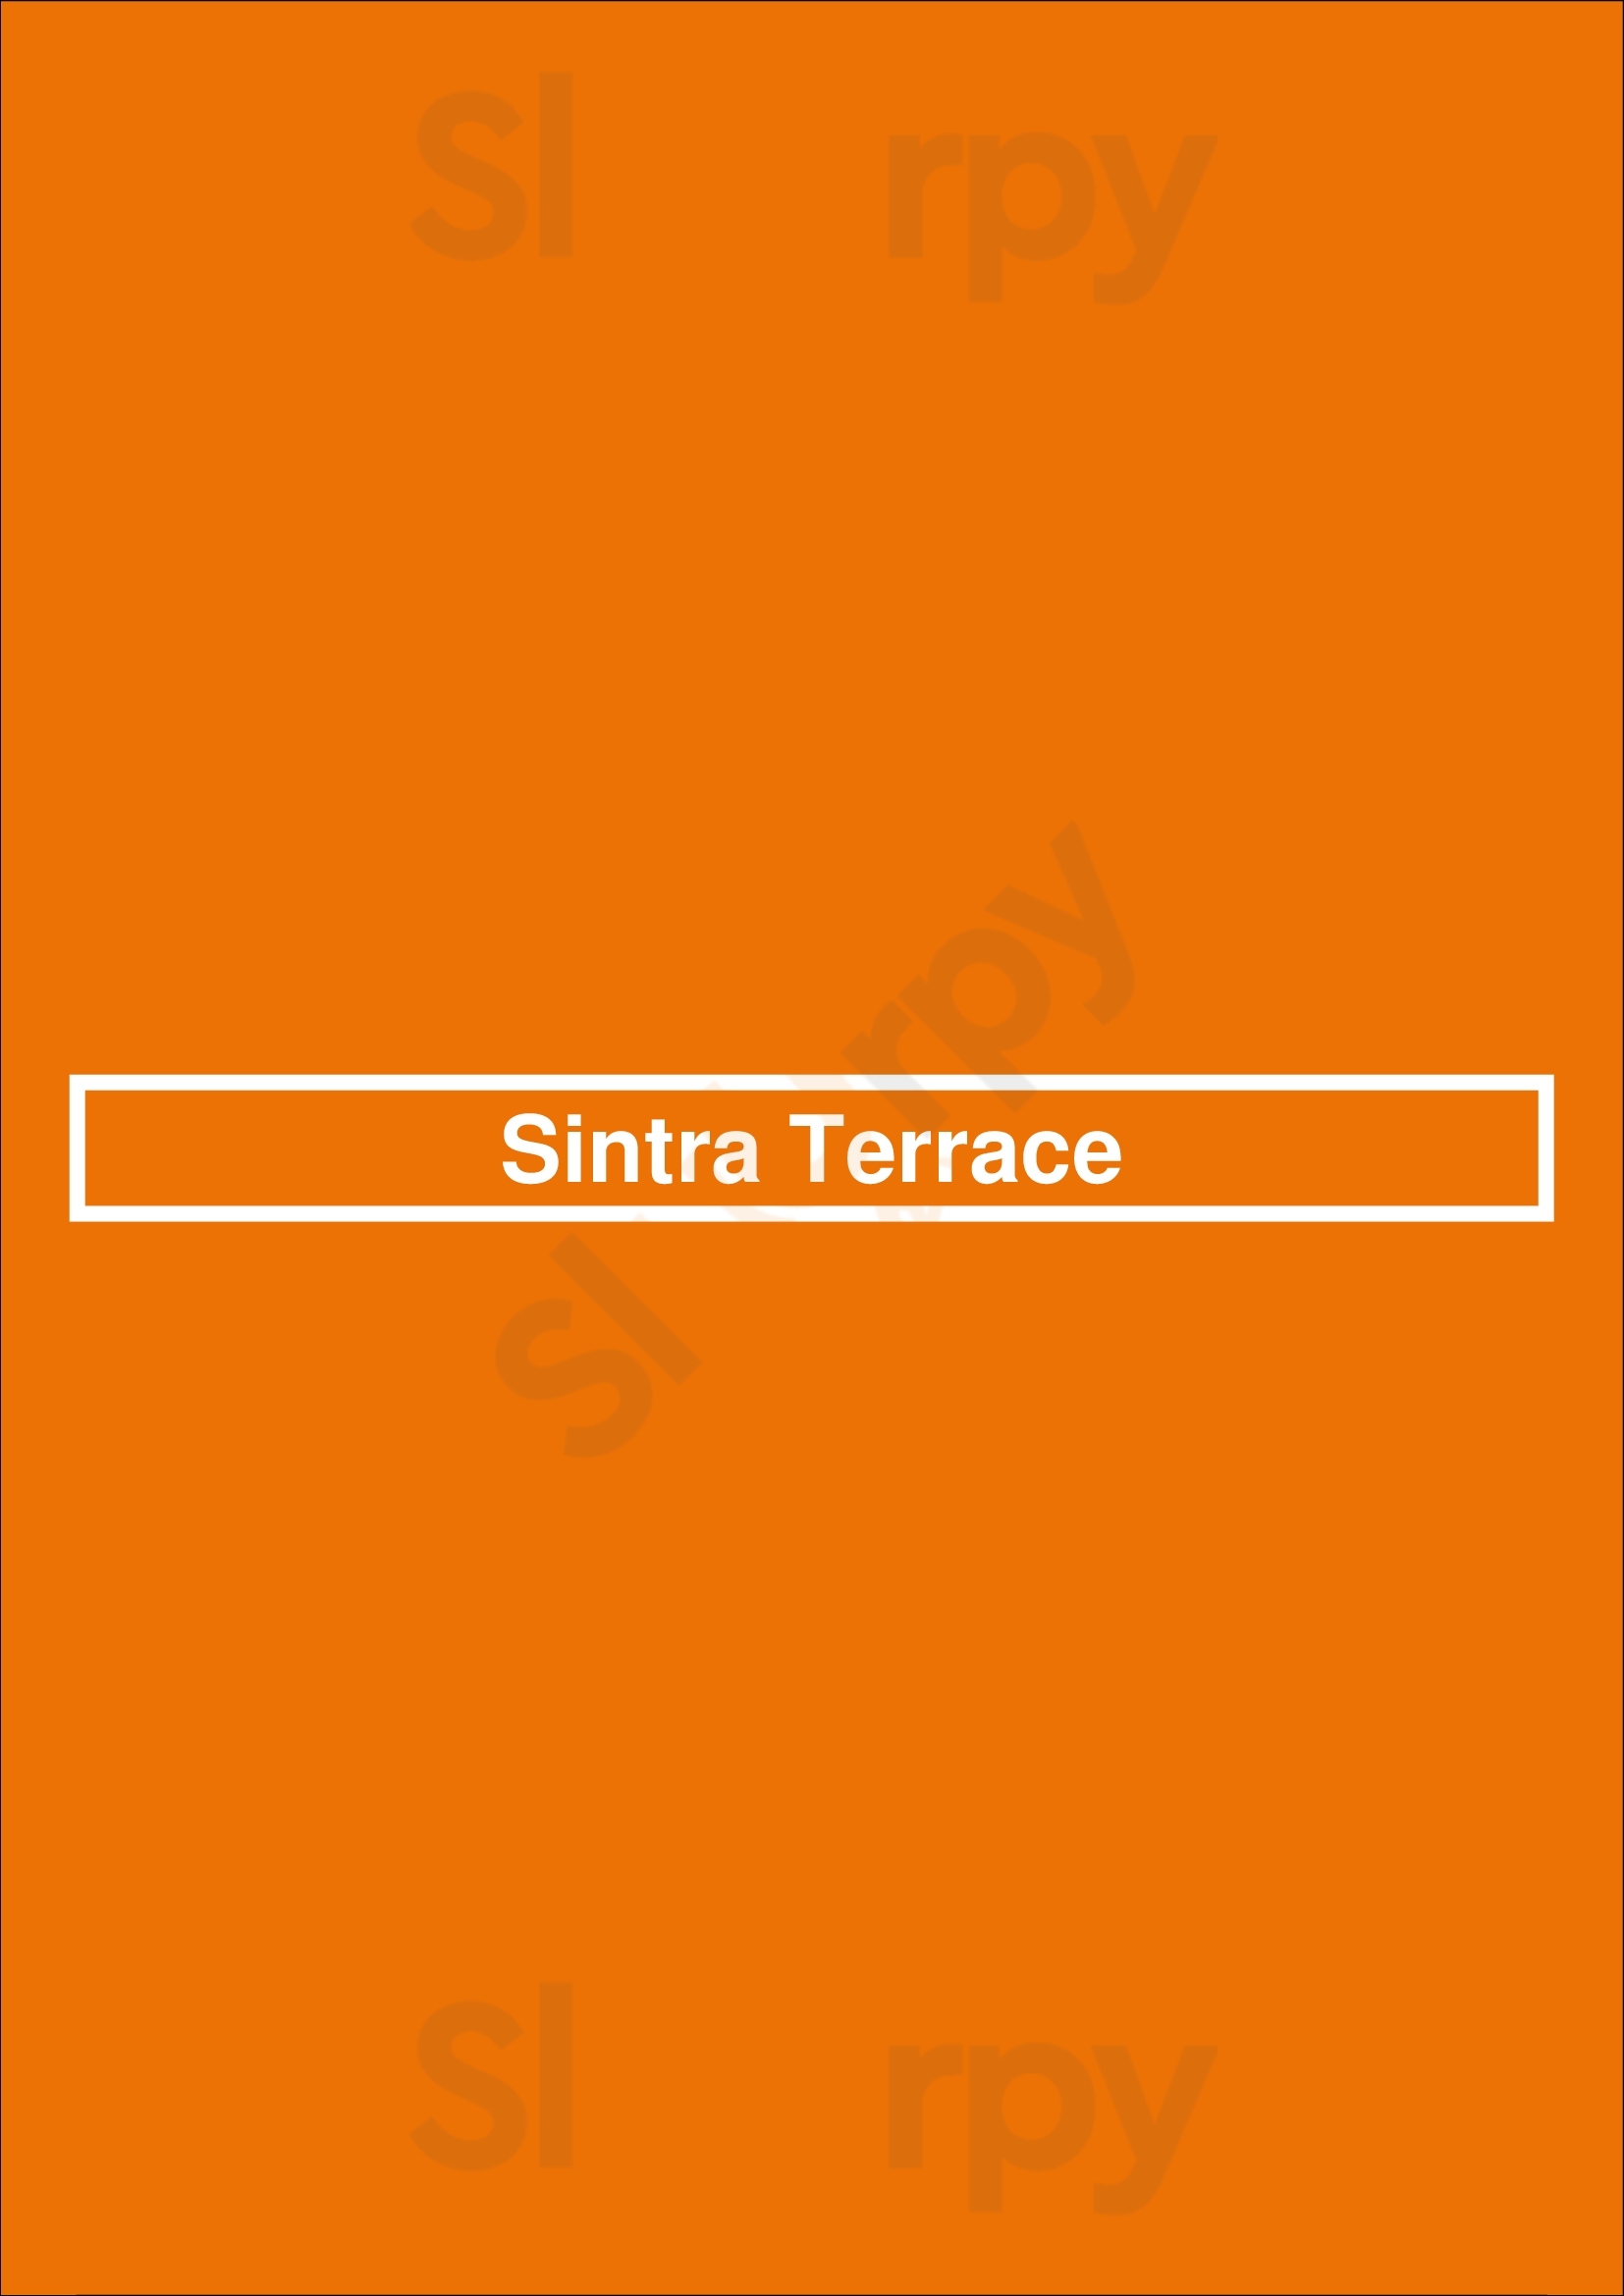 Sintra Terrace Sintra Menu - 1